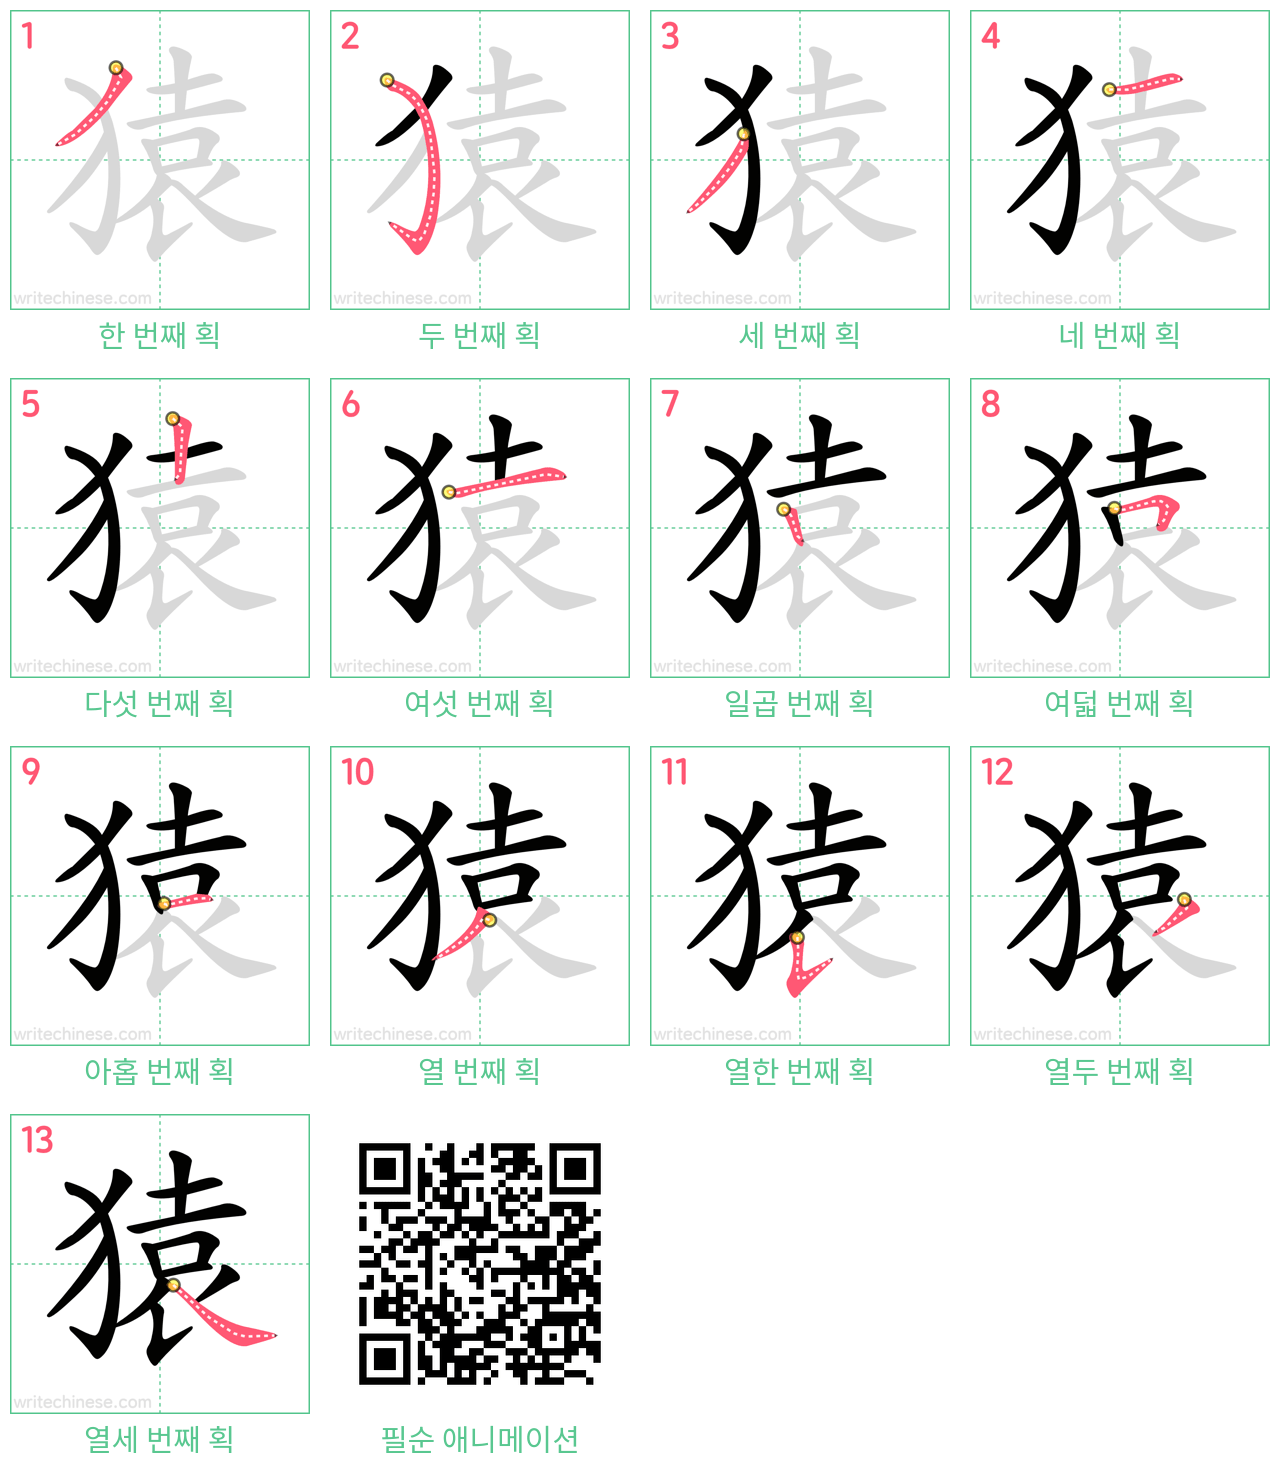 猿 step-by-step stroke order diagrams